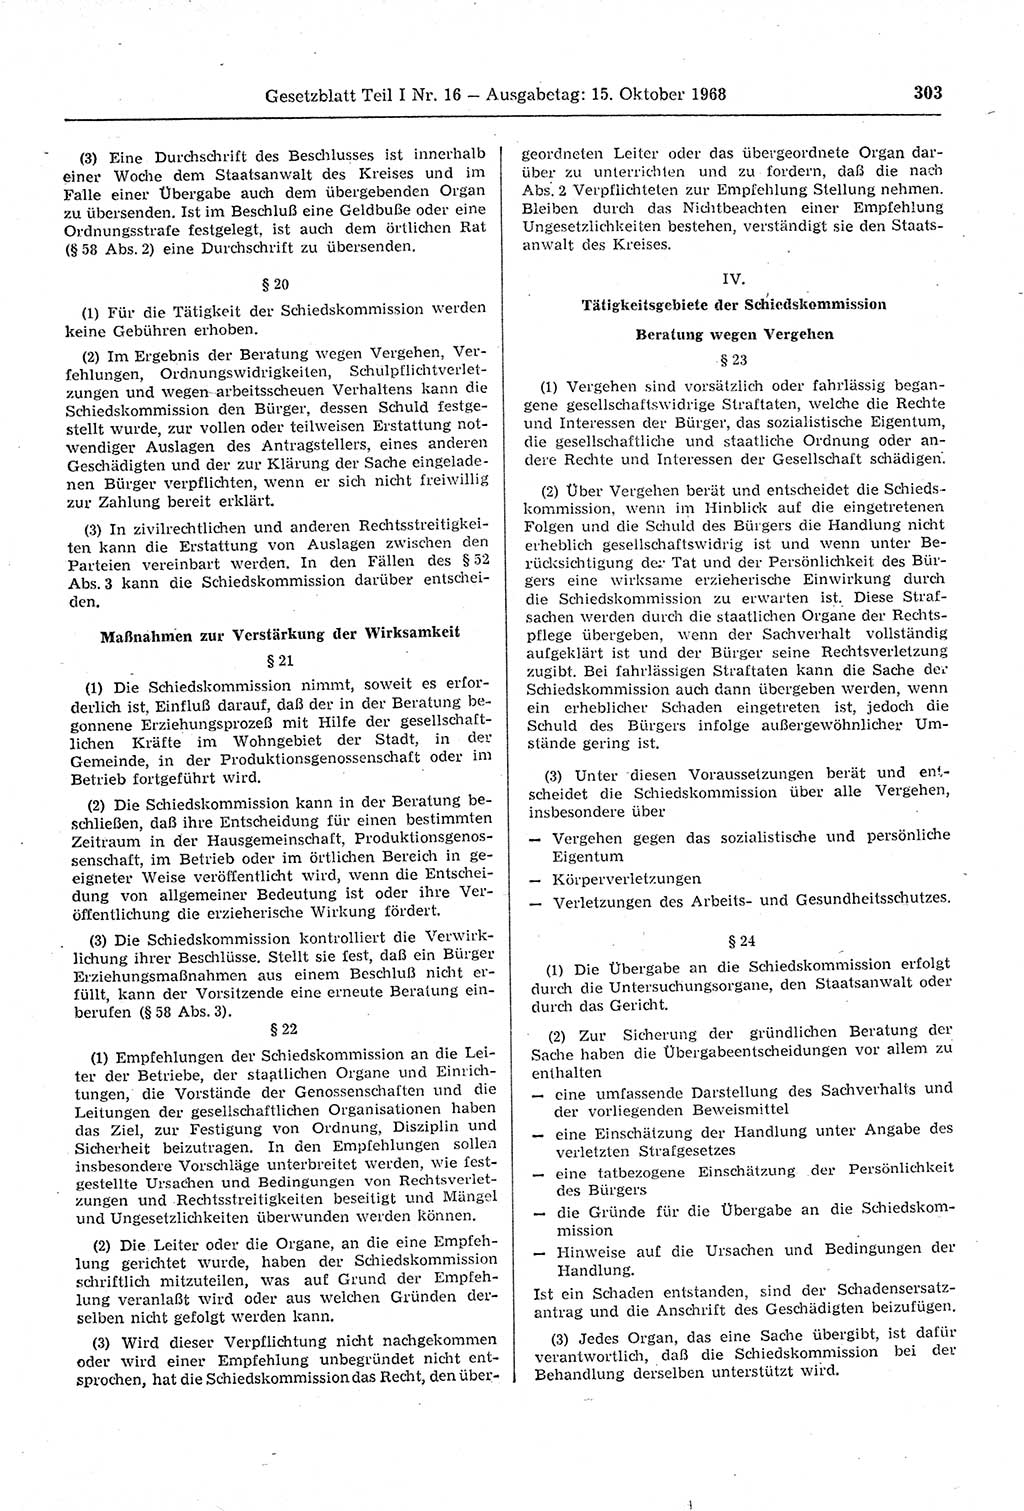 Gesetzblatt (GBl.) der Deutschen Demokratischen Republik (DDR) Teil Ⅰ 1968, Seite 303 (GBl. DDR Ⅰ 1968, S. 303)